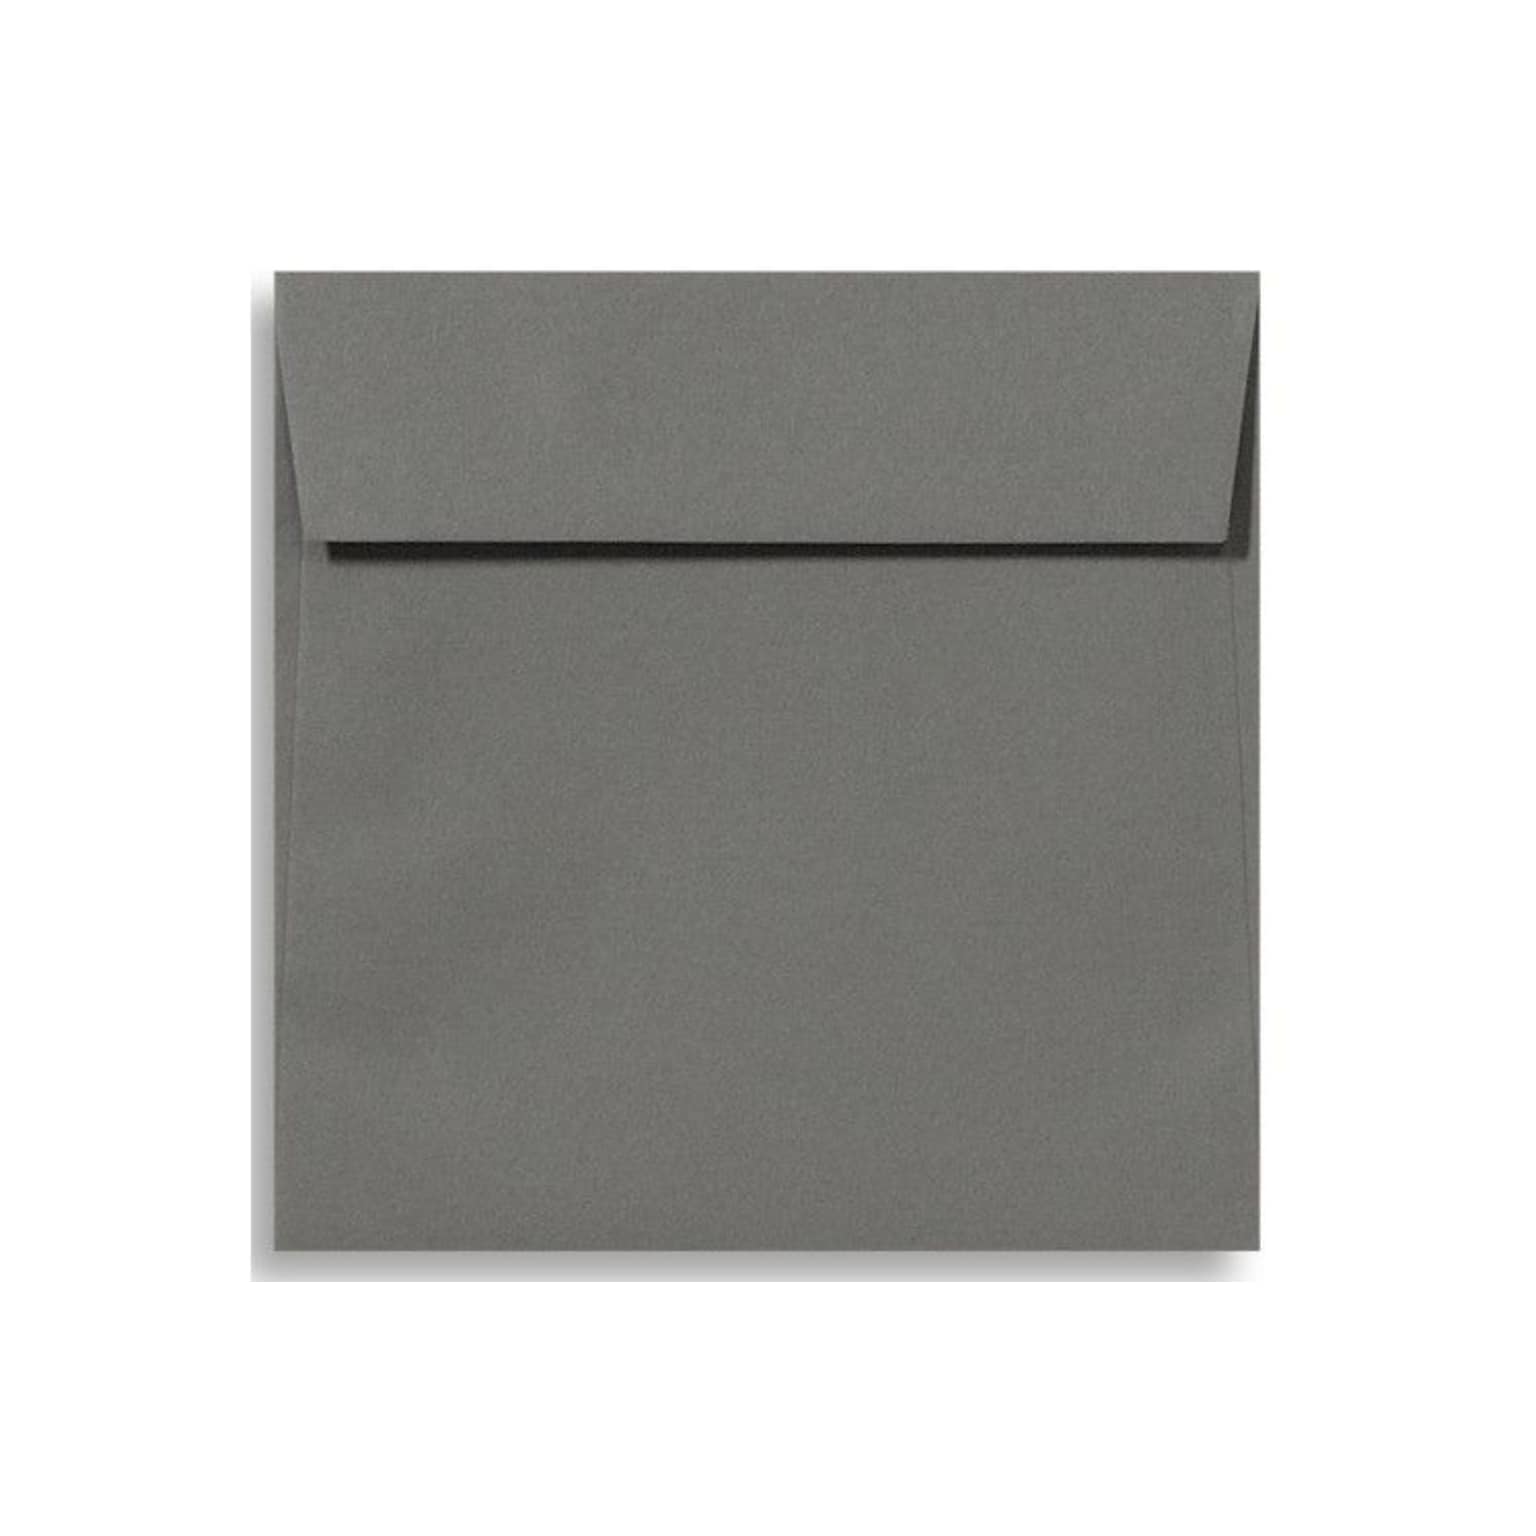 LUX® 70lb 5 1/2x5 1/2 Square Flap Envelopes W/Peel&Press; Smoke Gray, 500/BX